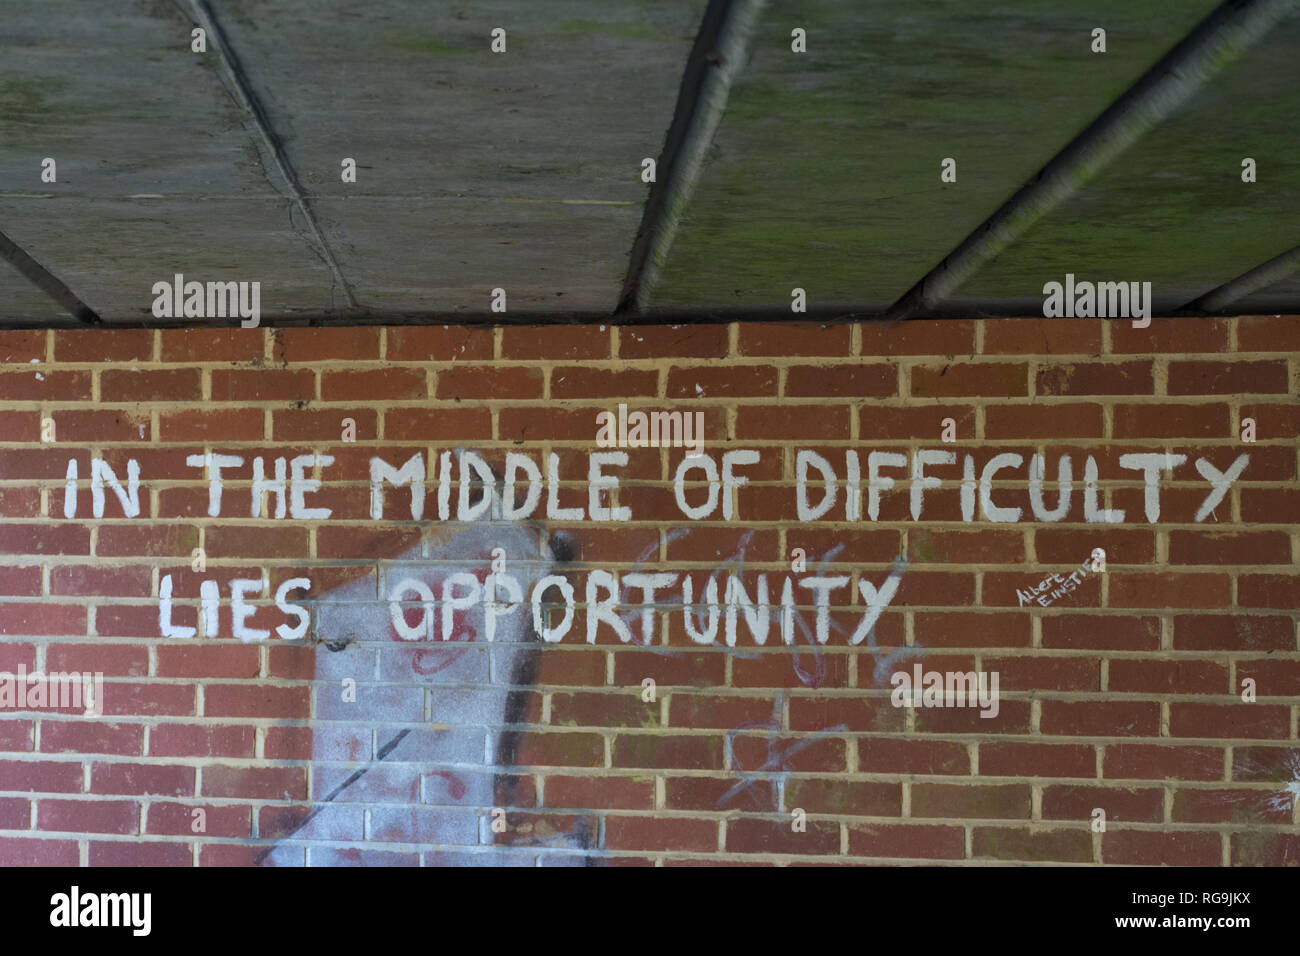 Le Graffiti sous un pont - dans la difficulté se trouve l'opportunité - un devis (devis) d'Albert Einstein. Pensée inspirée ou idée. Banque D'Images